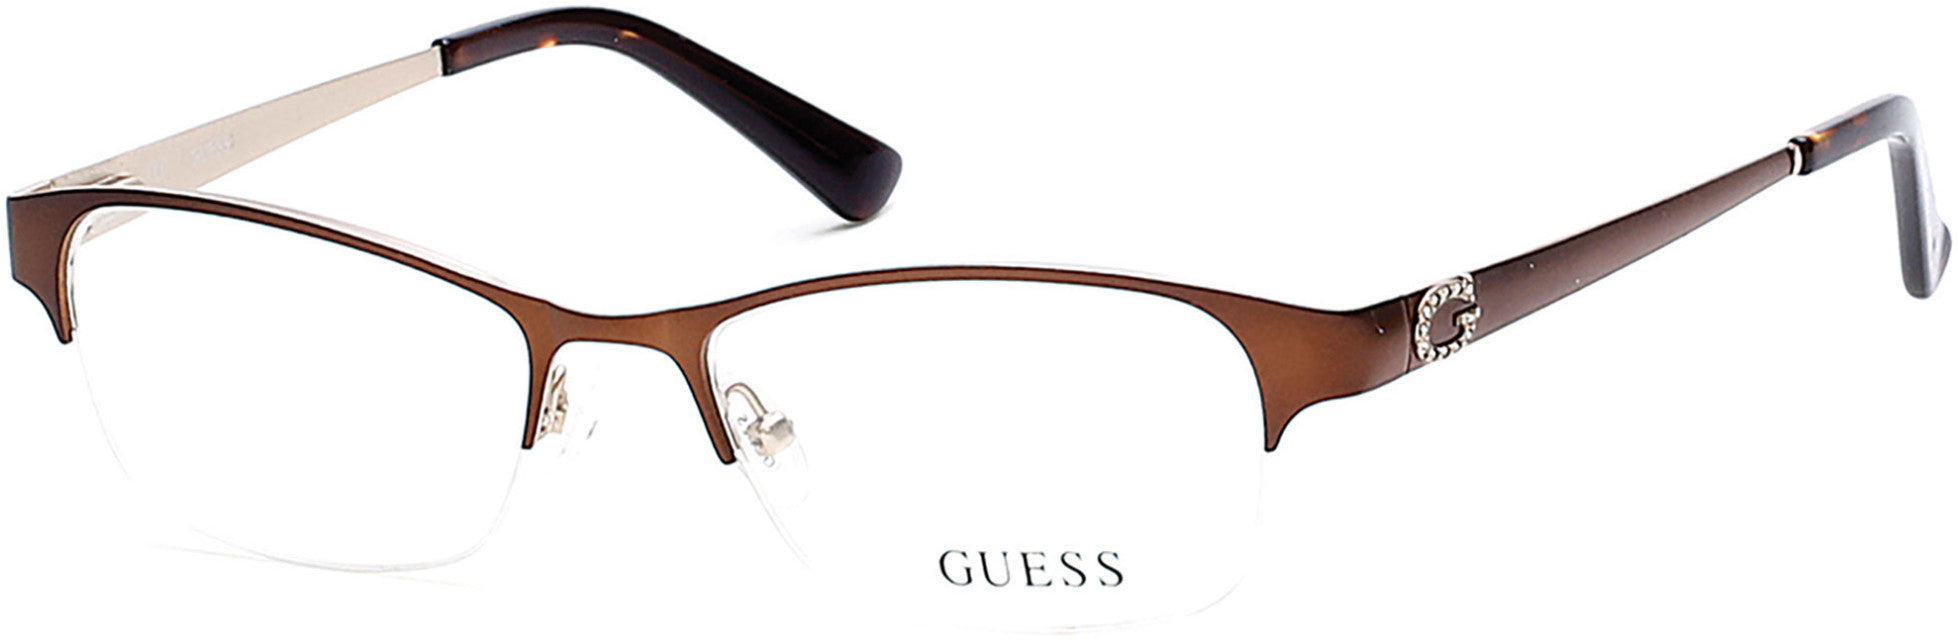 Guess GU2567 Round Eyeglasses 049-049 - Matte Dark Brown